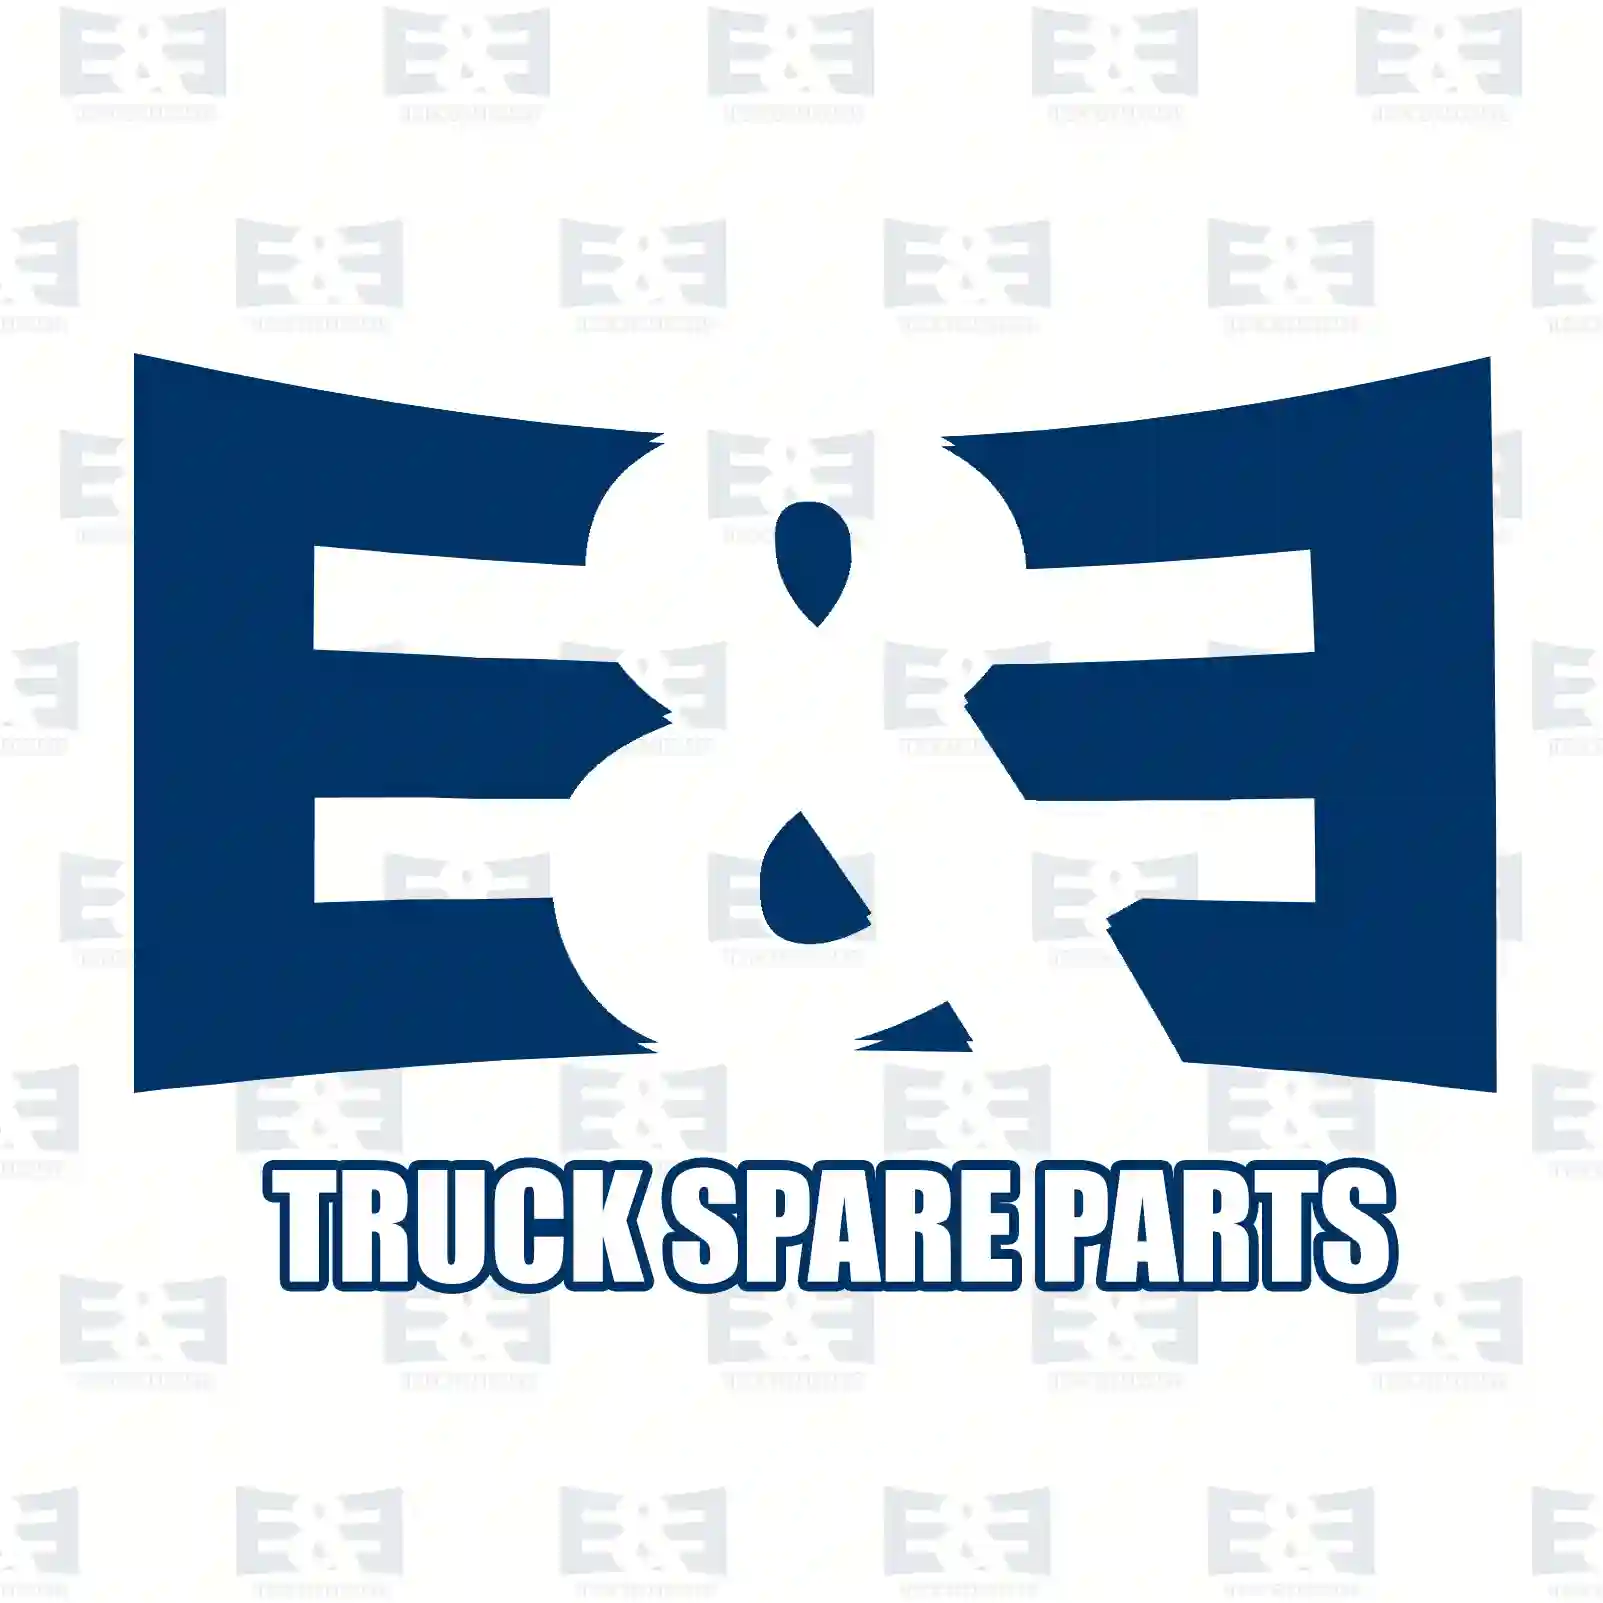 Warning label, 2E2285151, , ||  2E2285151 E&E Truck Spare Parts | Truck Spare Parts, Auotomotive Spare Parts Warning label, 2E2285151, , ||  2E2285151 E&E Truck Spare Parts | Truck Spare Parts, Auotomotive Spare Parts